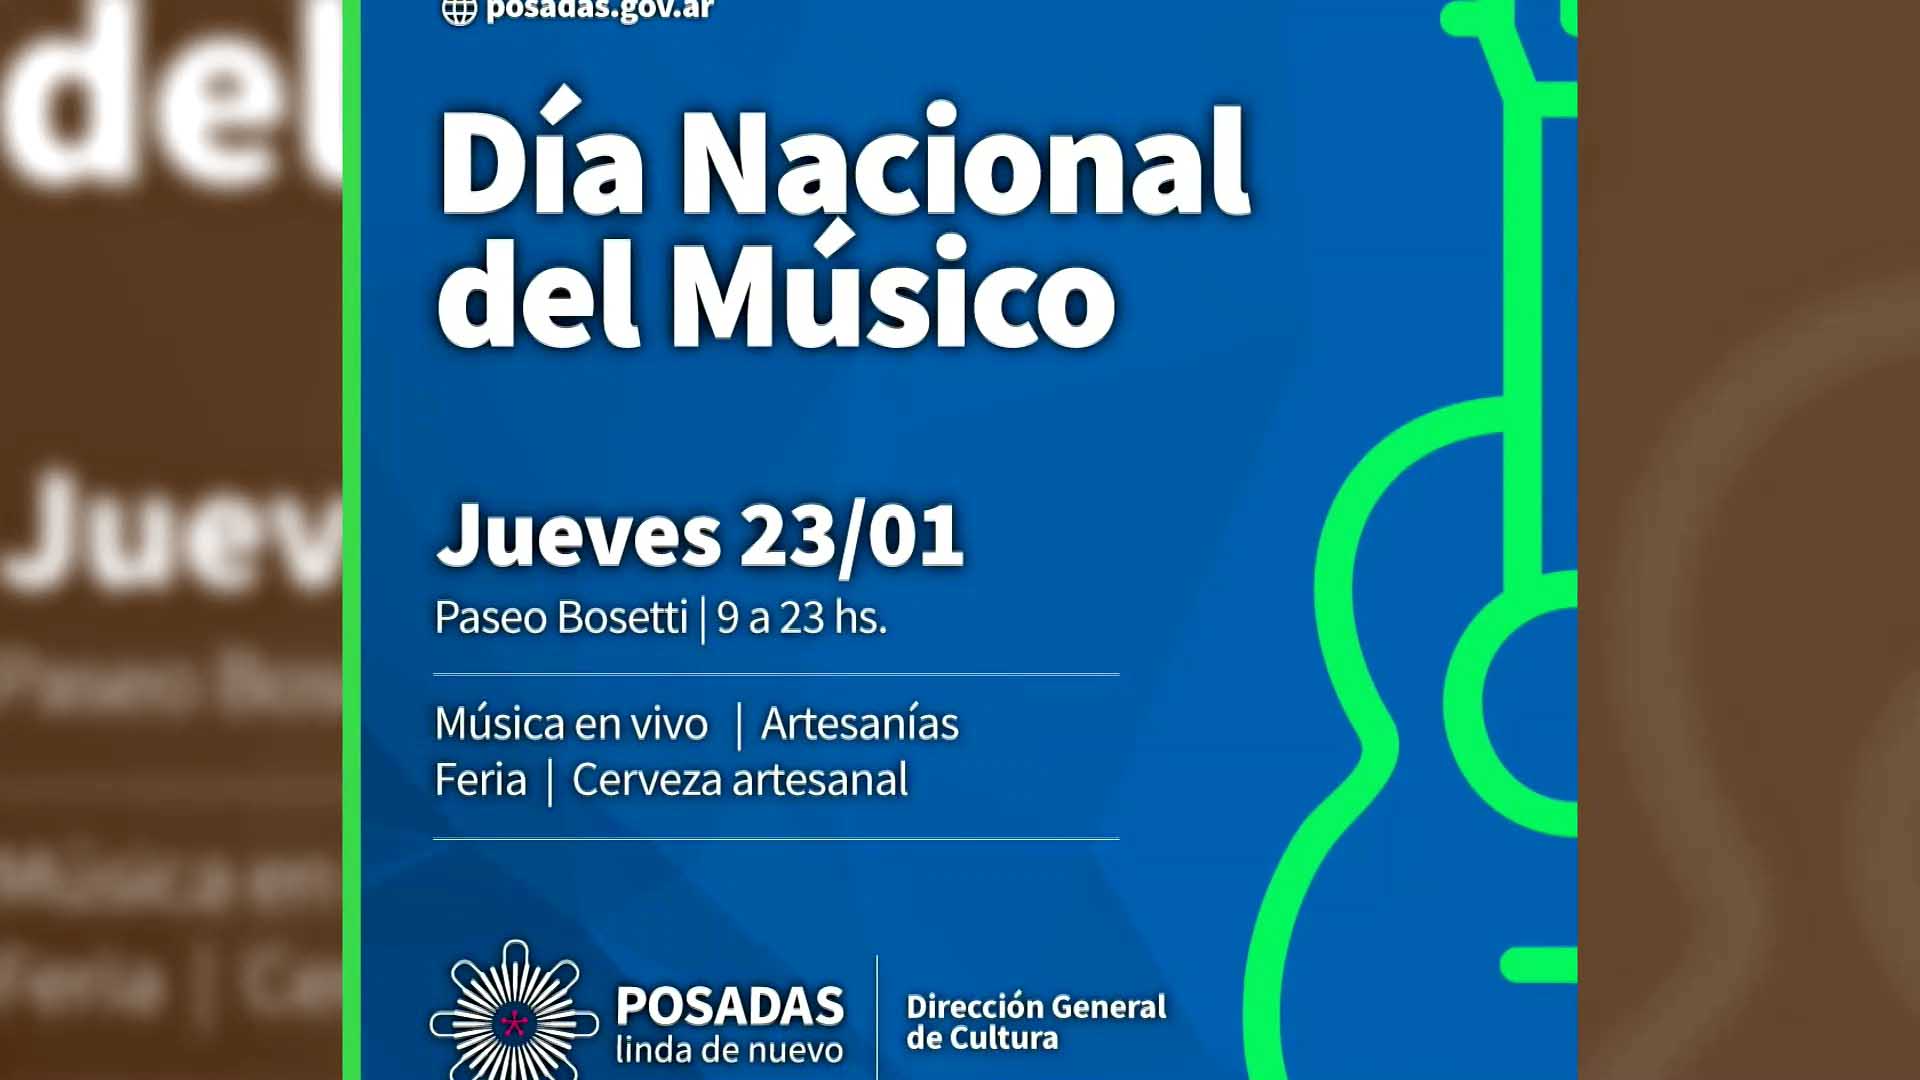 Día Nacional del Músico: homenaje a Luis Alberto Spinetta en el Bosetti